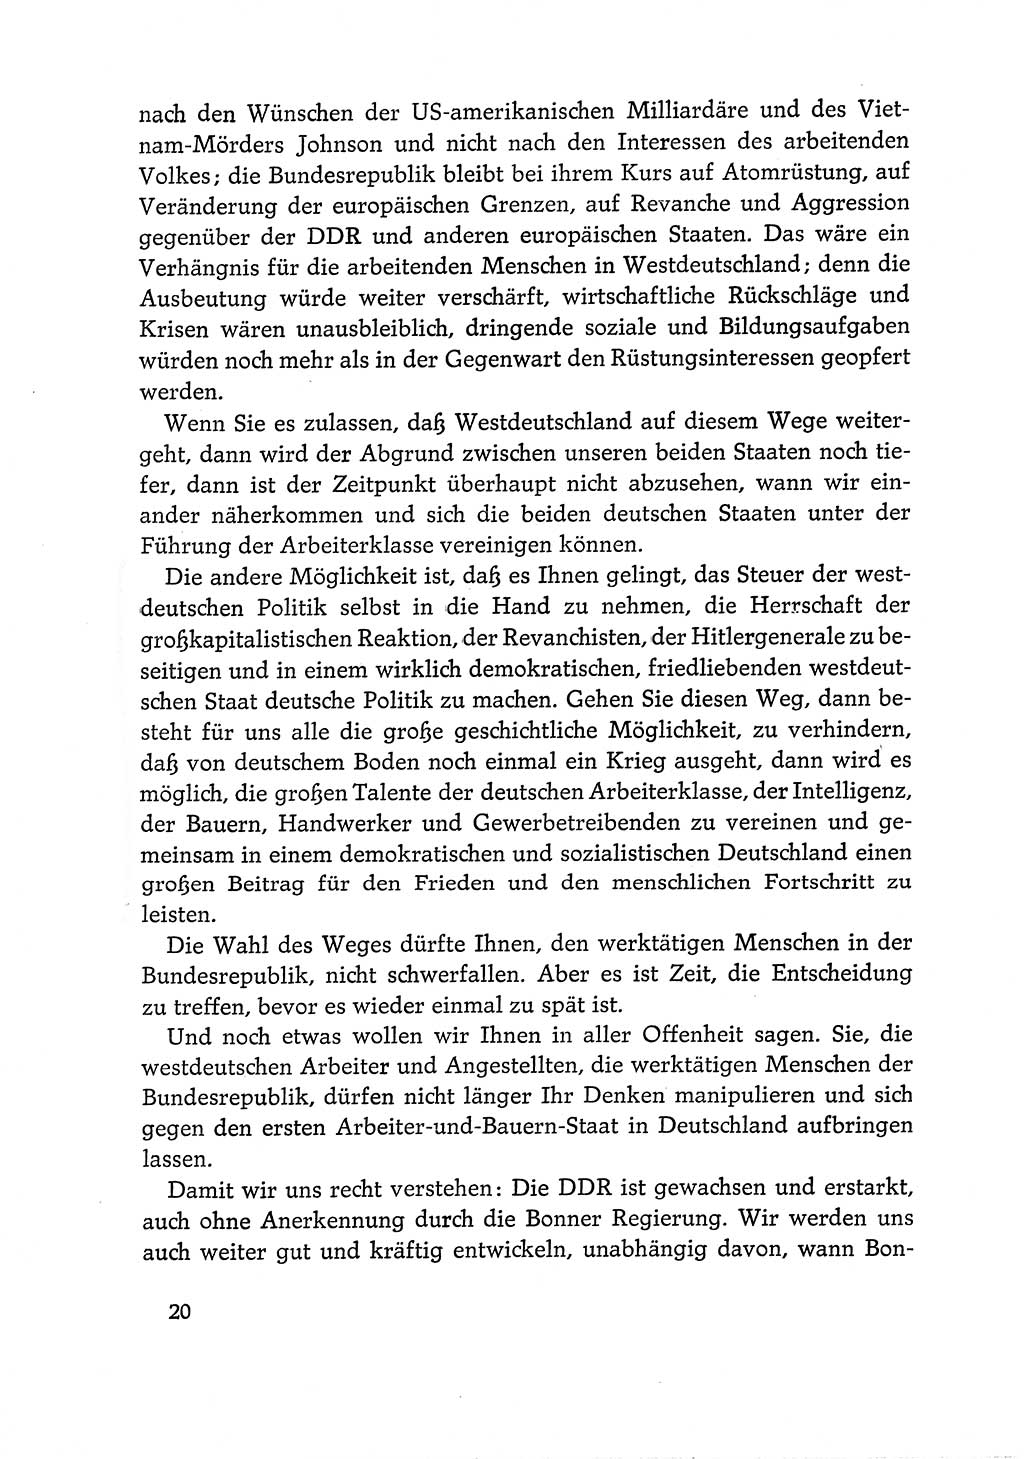 Dokumente der Sozialistischen Einheitspartei Deutschlands (SED) [Deutsche Demokratische Republik (DDR)] 1968-1969, Seite 20 (Dok. SED DDR 1968-1969, S. 20)